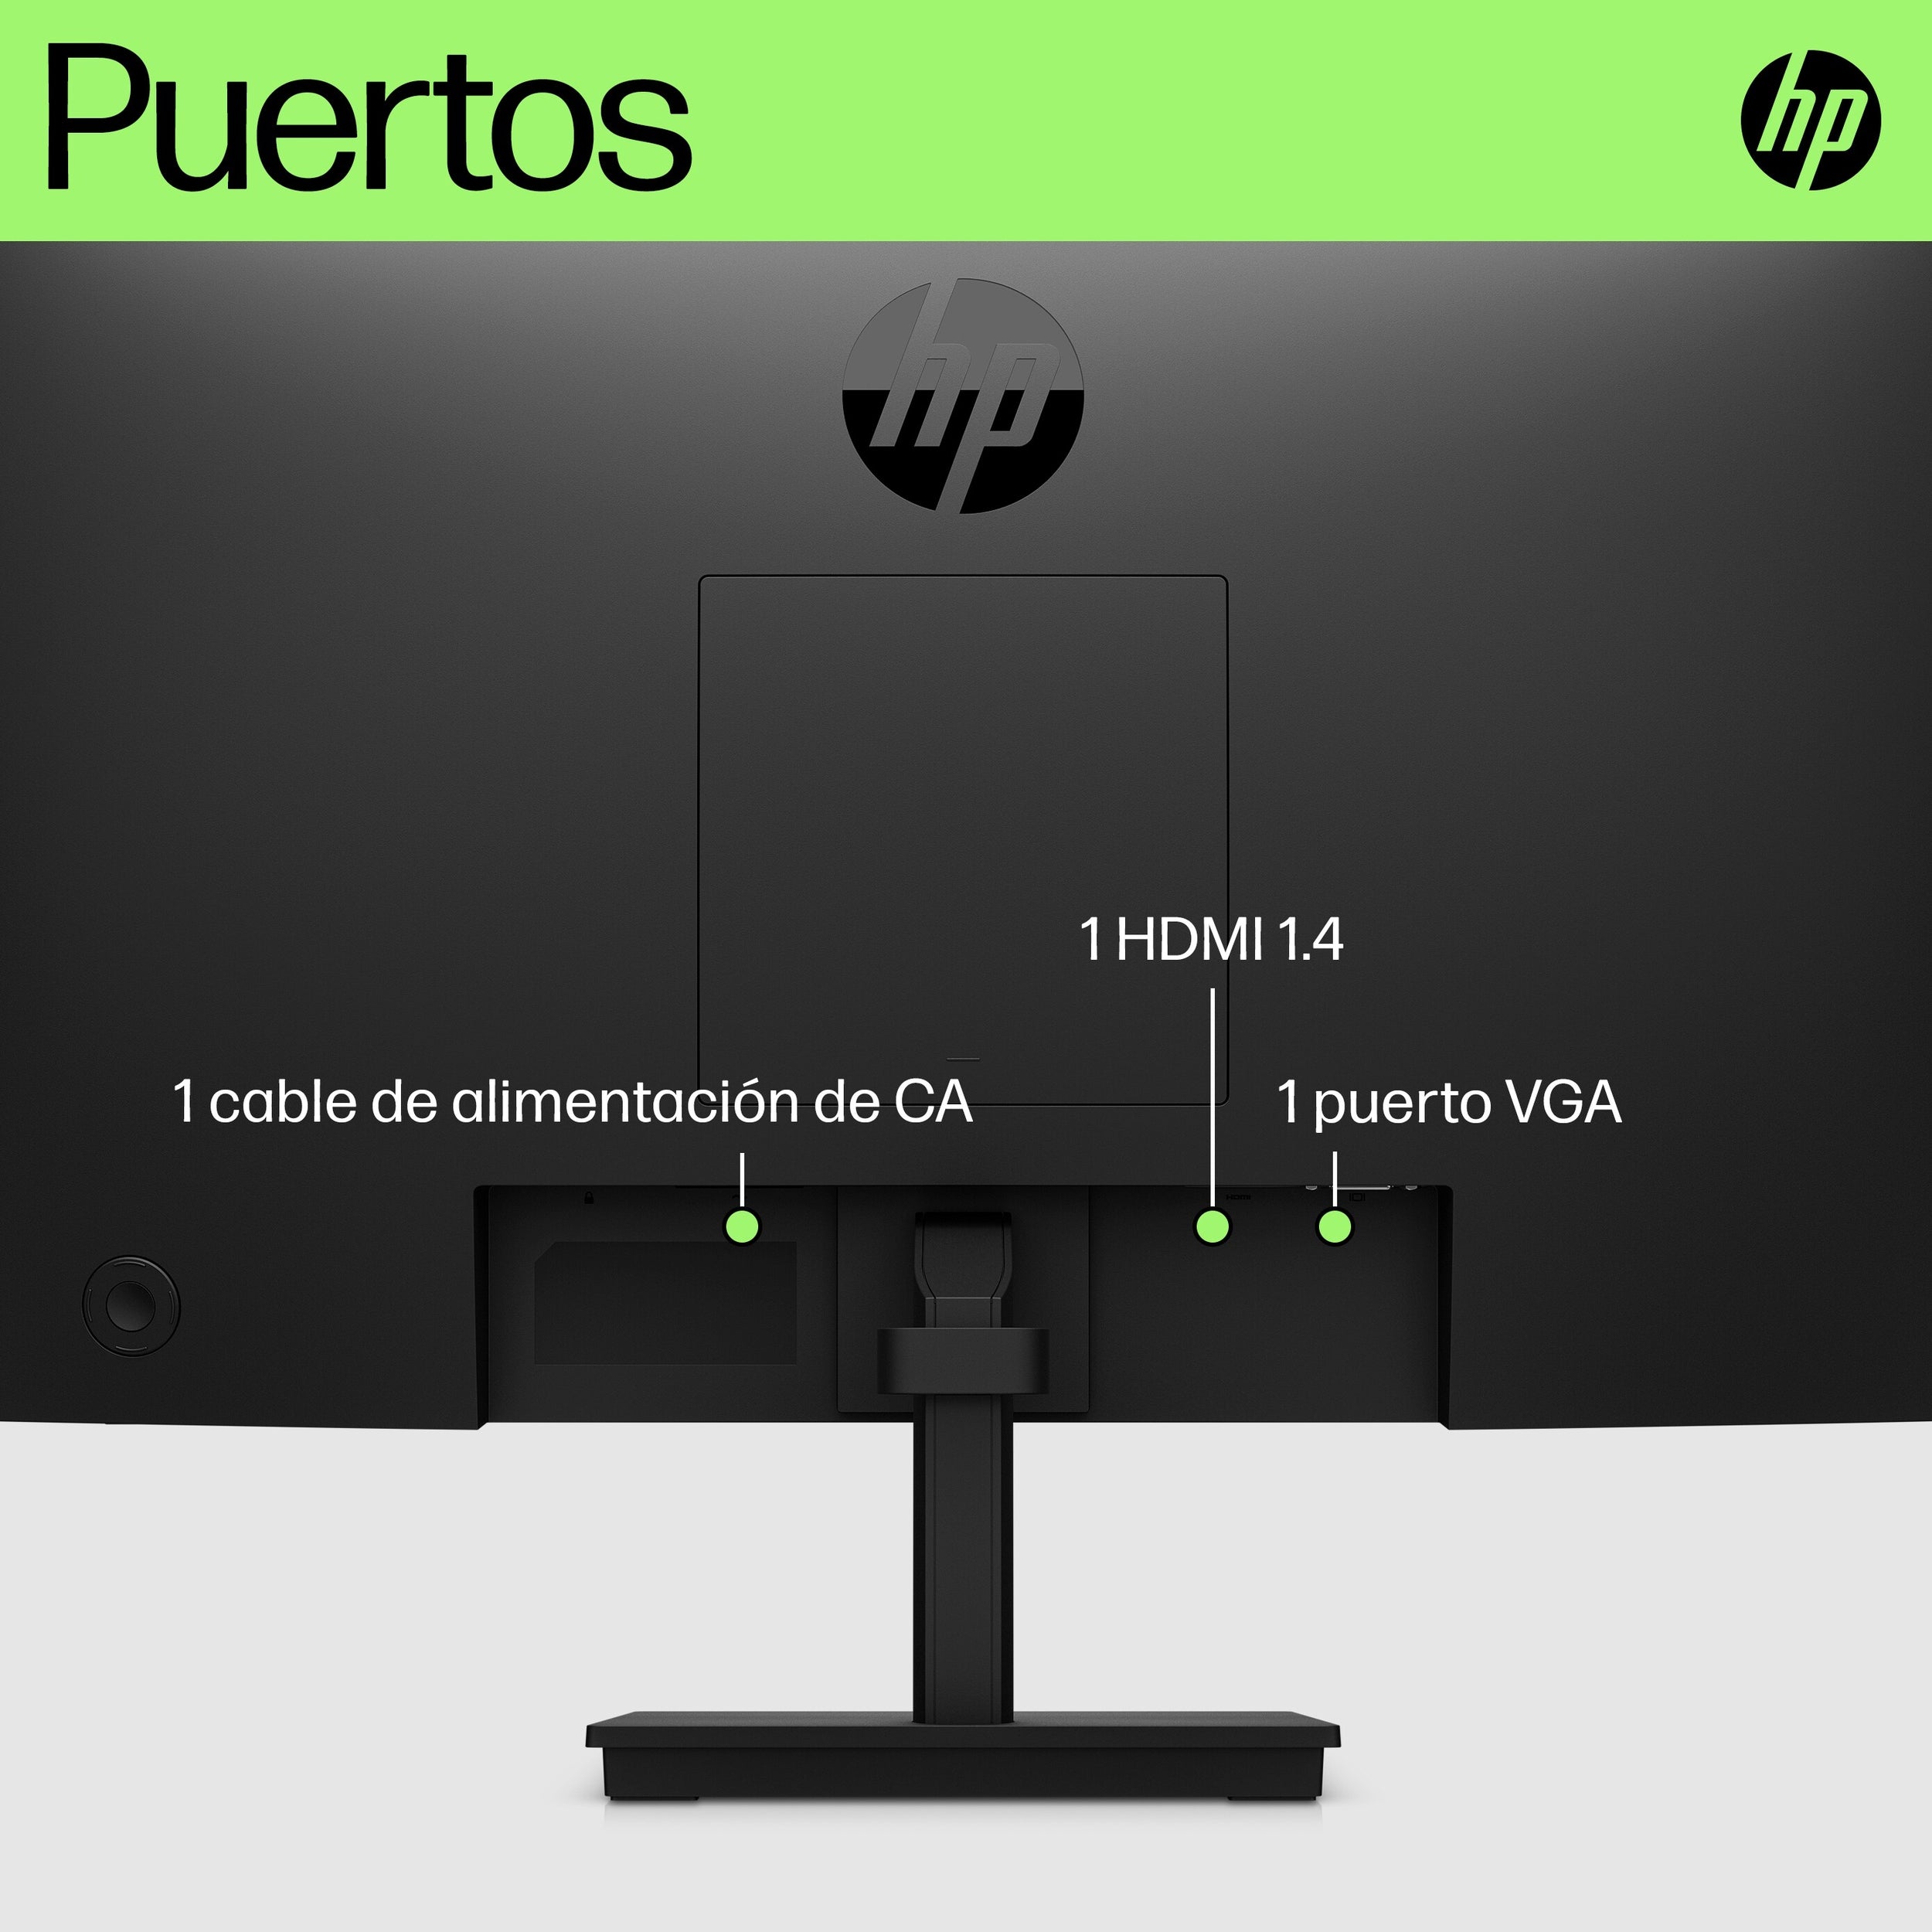 Monitor LED HP P22v G5 de 21, Resolución 1920 x 1080 (Full HD